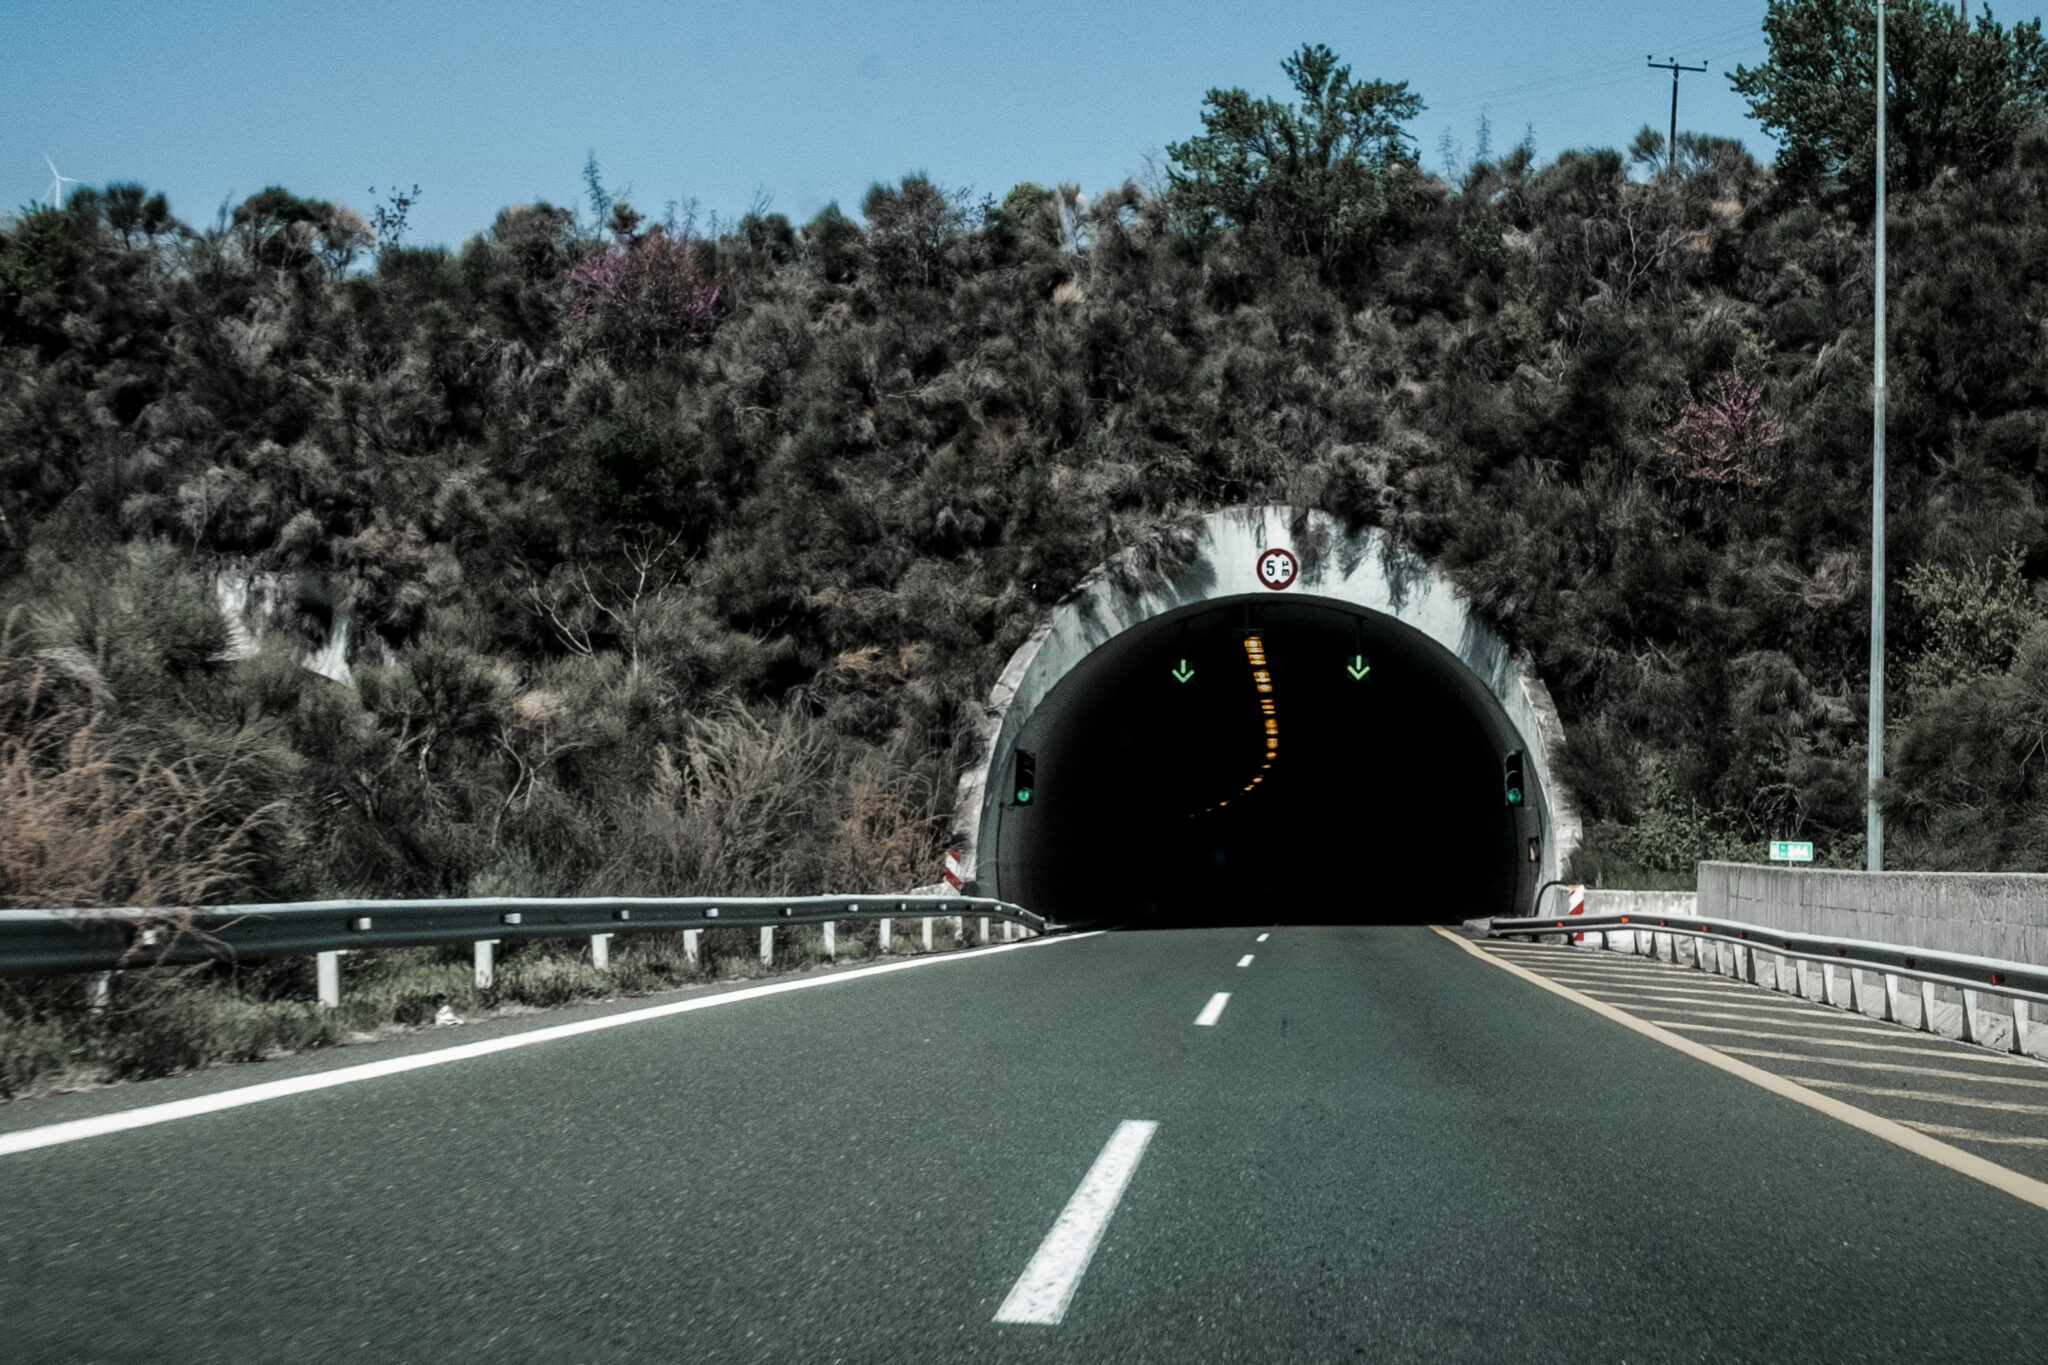 Εγνατία Οδός: Ανησυχία για την ασφάλεια του αυτοκινητόδρομου και καταγγελίες περί επικινδυνότητας - Κλείνει το τούνελ στο Ανήλιο